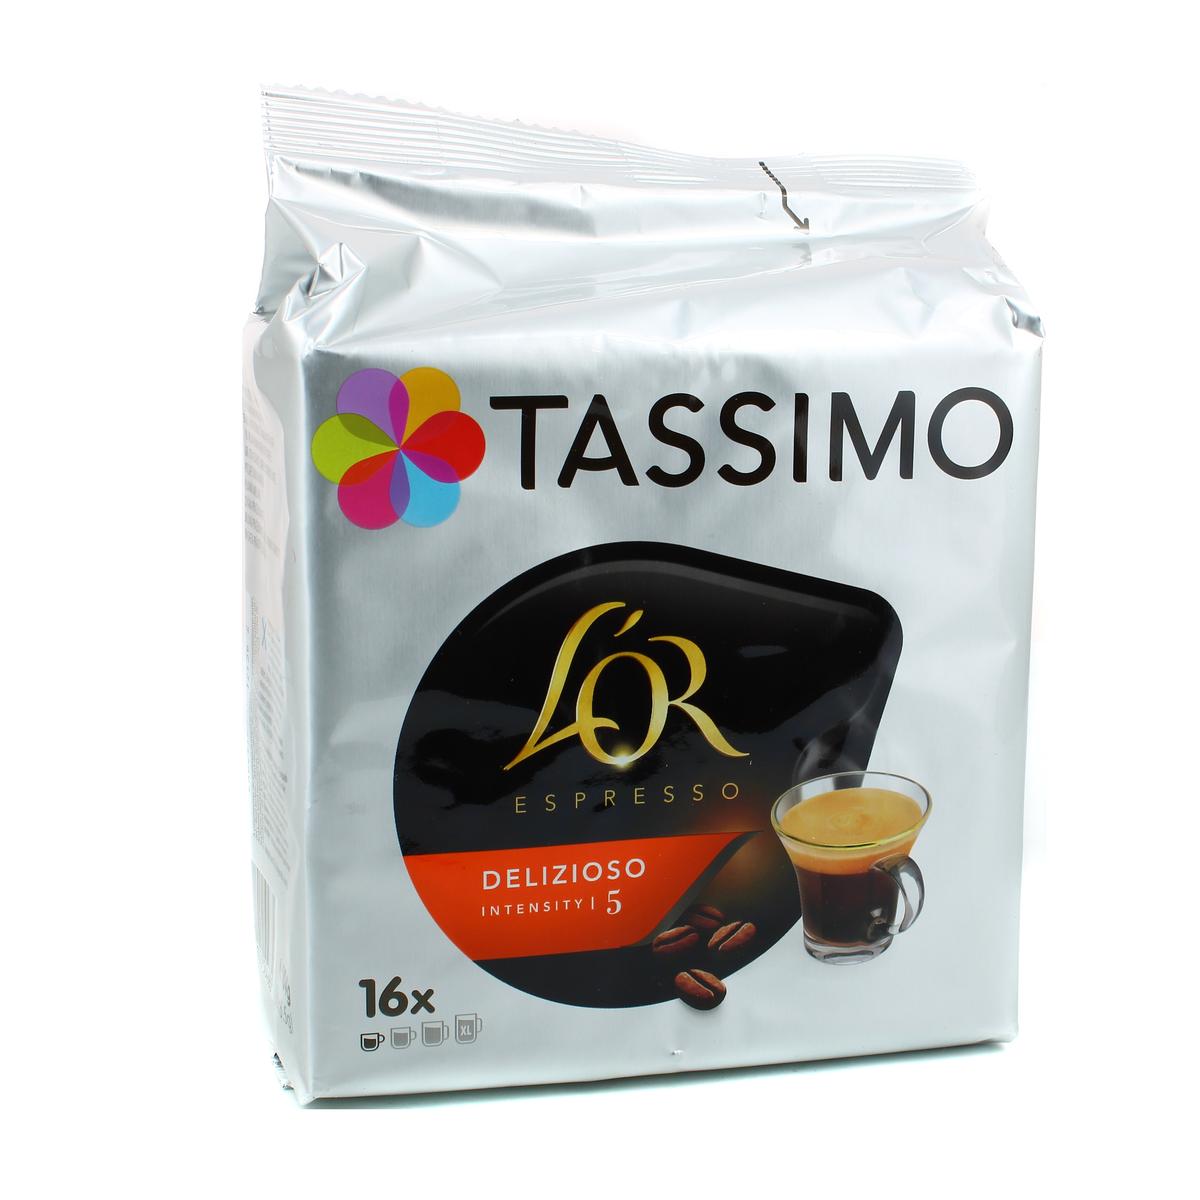 Livraison à domicile Tassimo L'or cappuccino, 8 dosettes